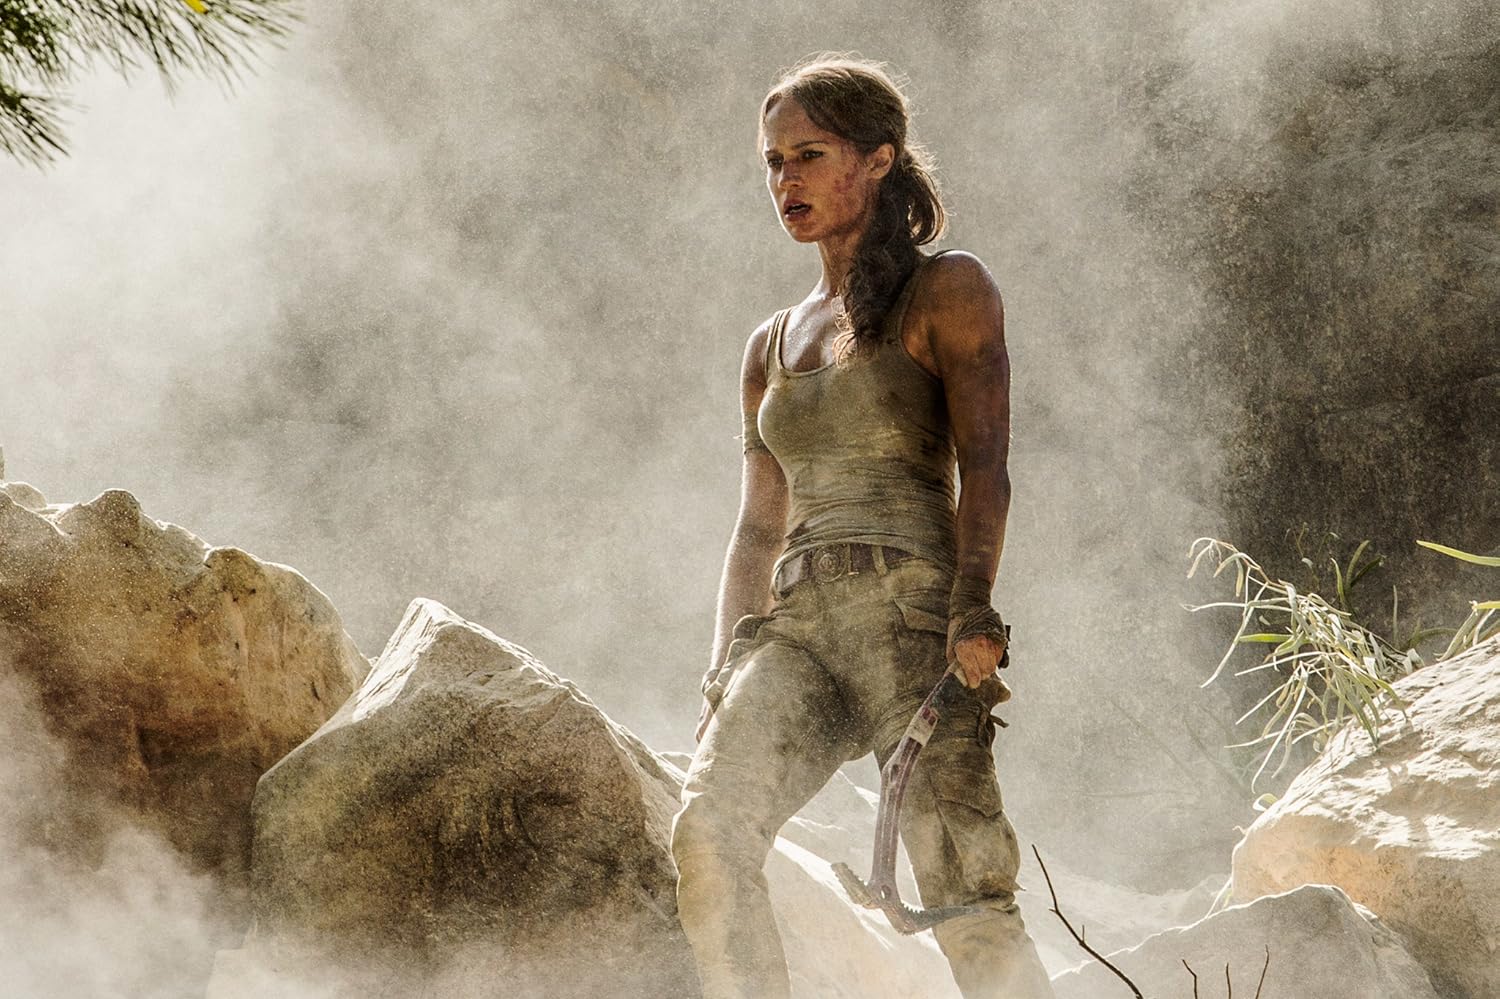 Inilah Perbedaan Antara Tomb Raider Baru, Dulu Dan Versi Gamenya